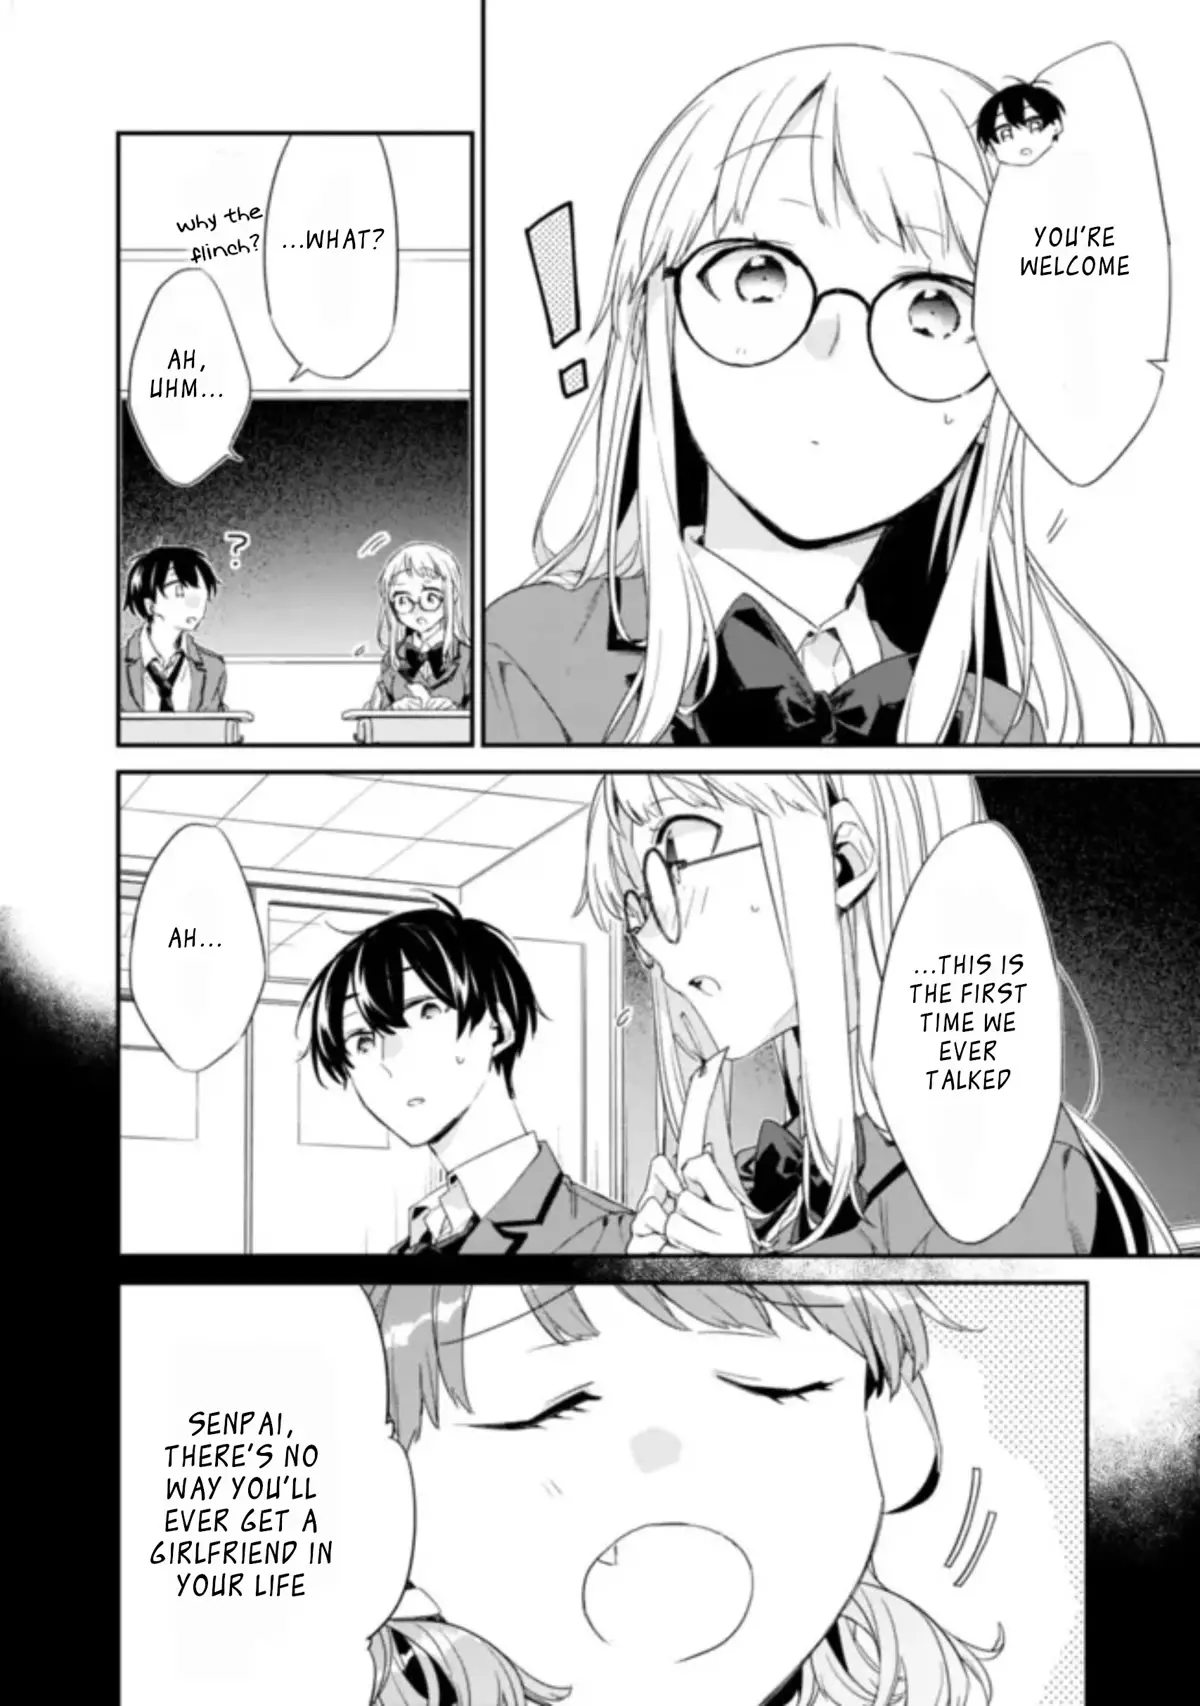 I'm not Crying you Crying 😭 #sadmanga #domesticgirlfriend #manga